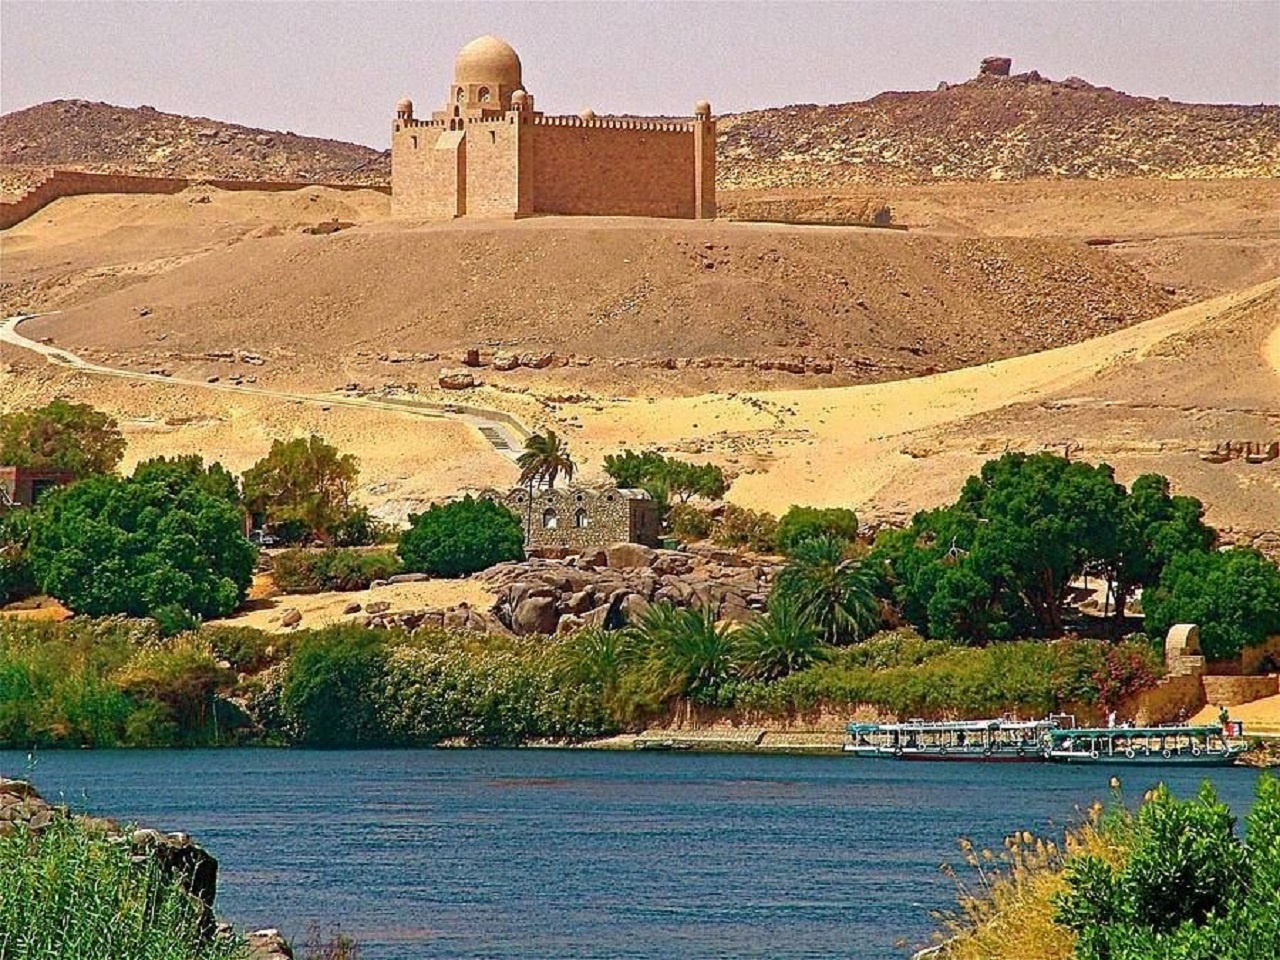 Croisière sur le Nil de 2 jours au départ de Marsa Alam avec Abu Simble